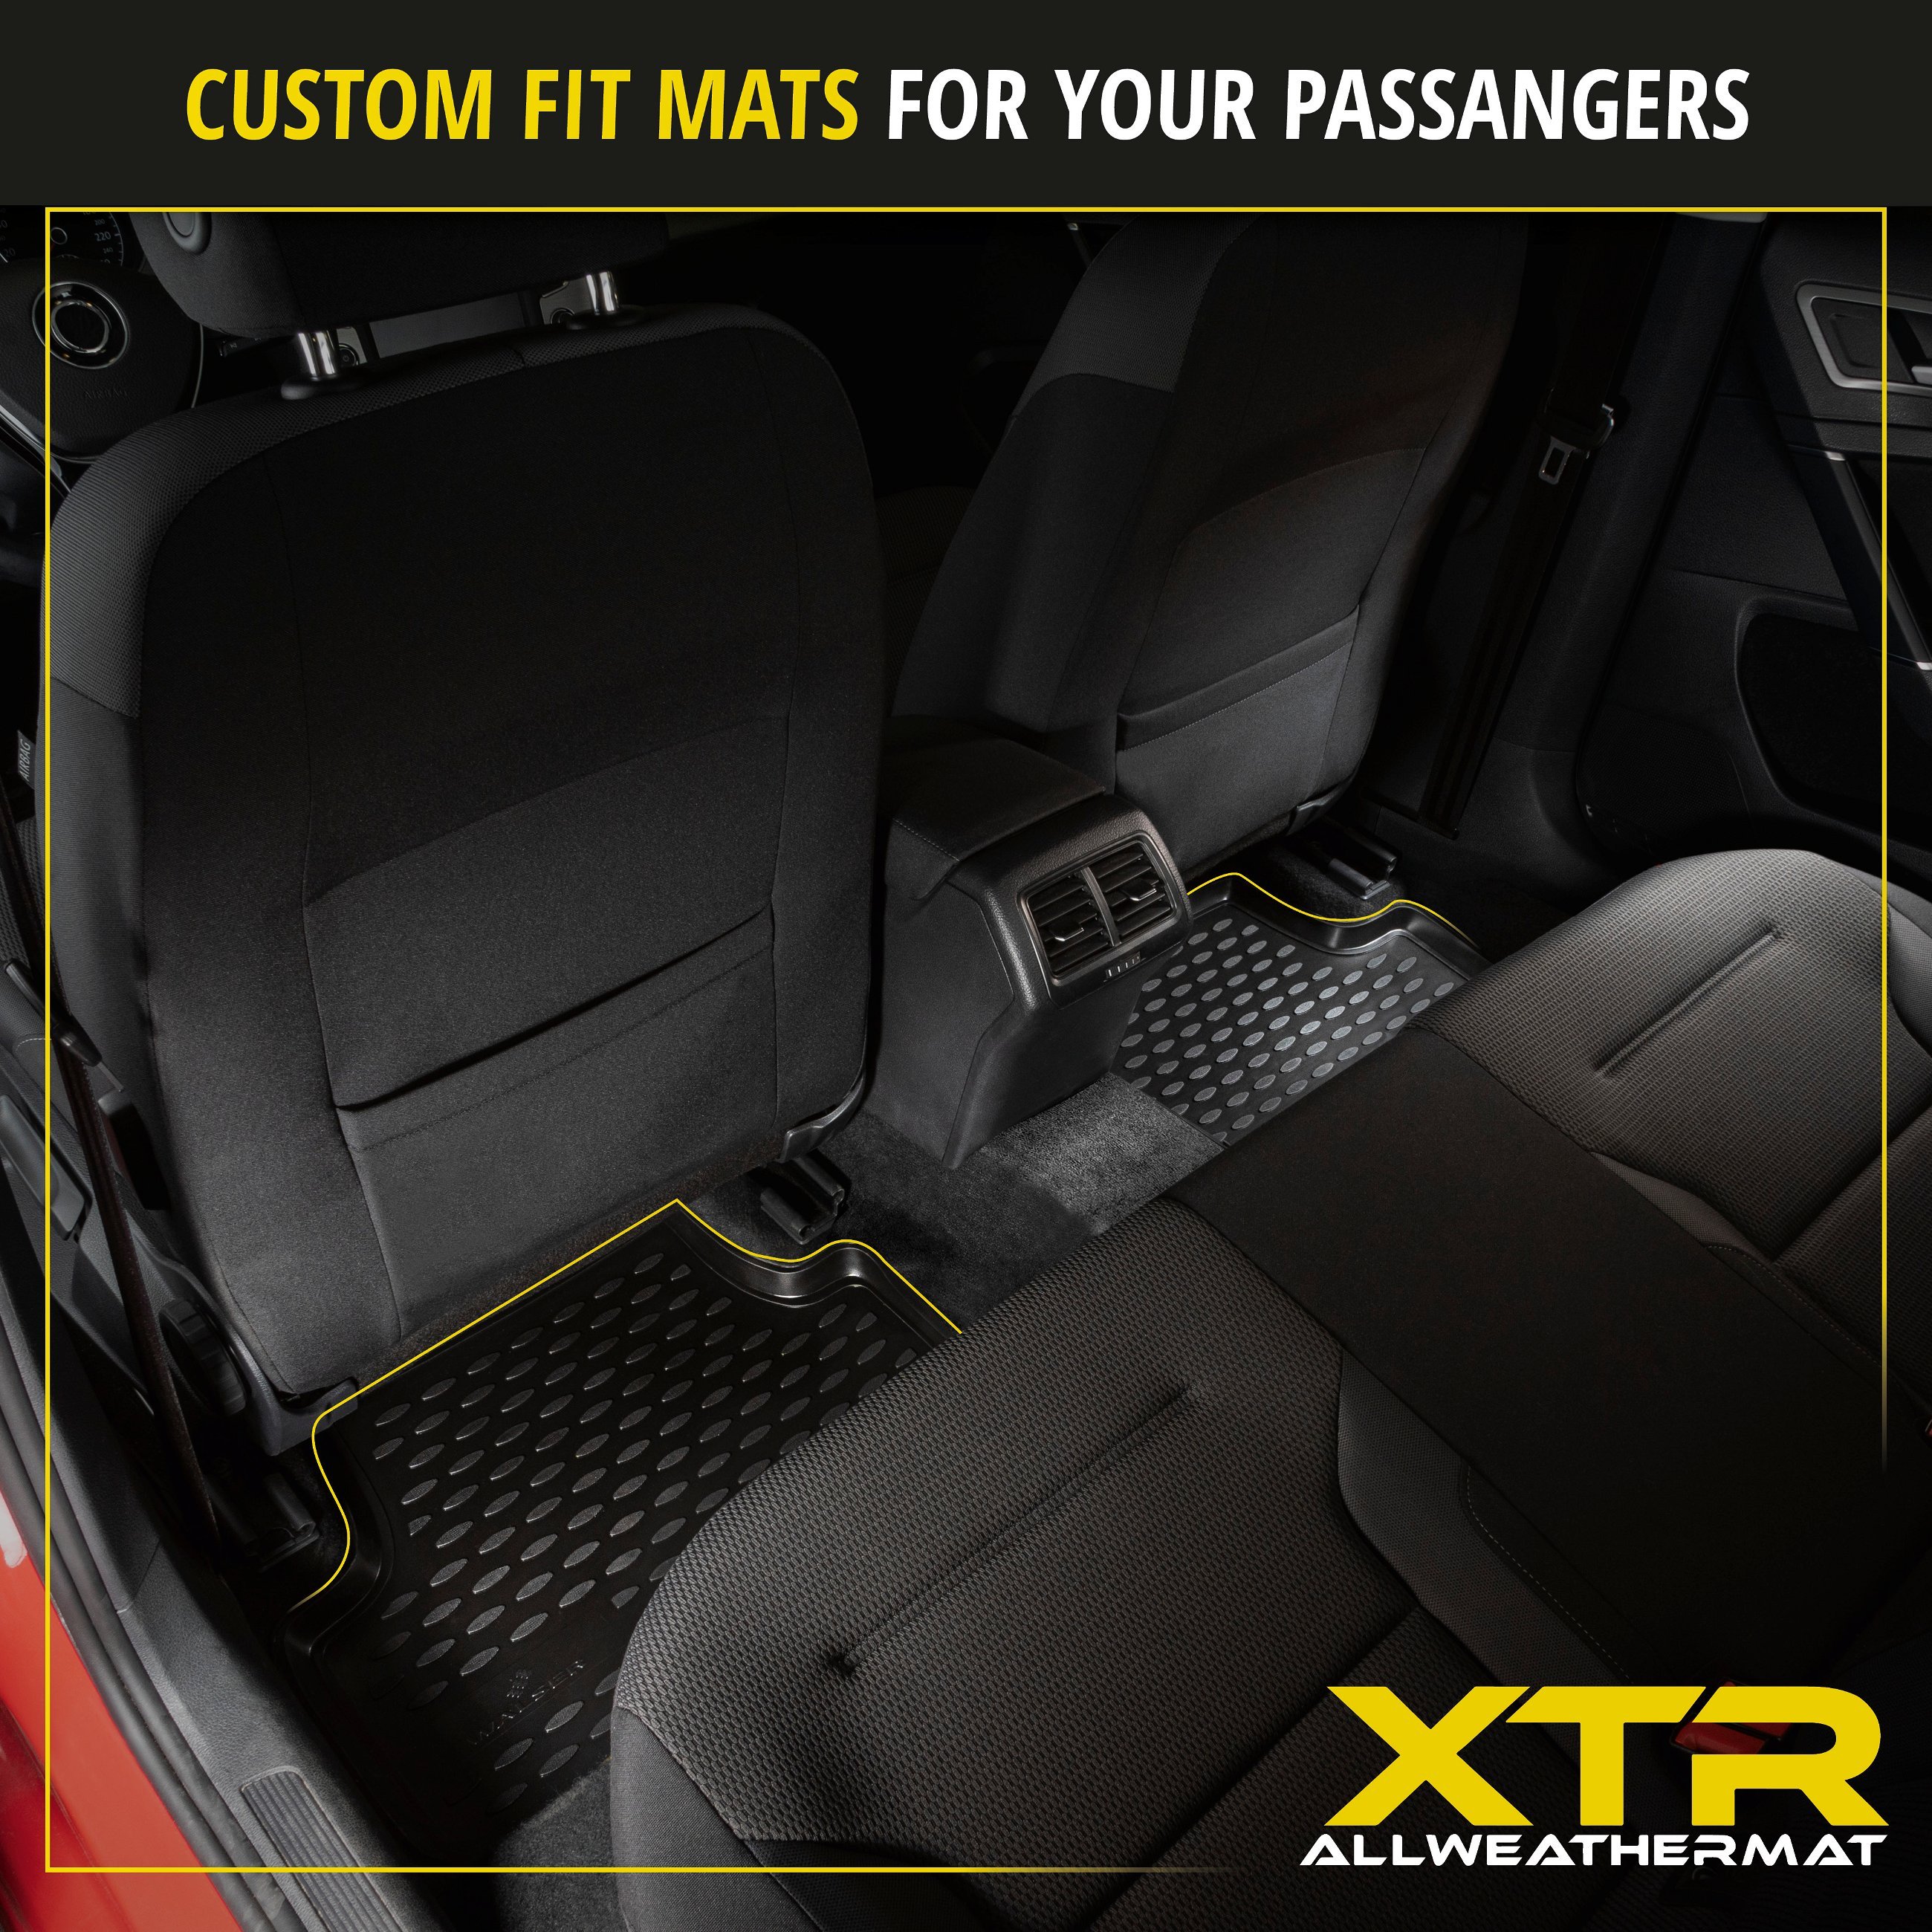 XTR Rubber Mats for Audi A6 (C7) Avant 05/2011 - 09/2018, A6 Allroad 01/2012 - 09/2018